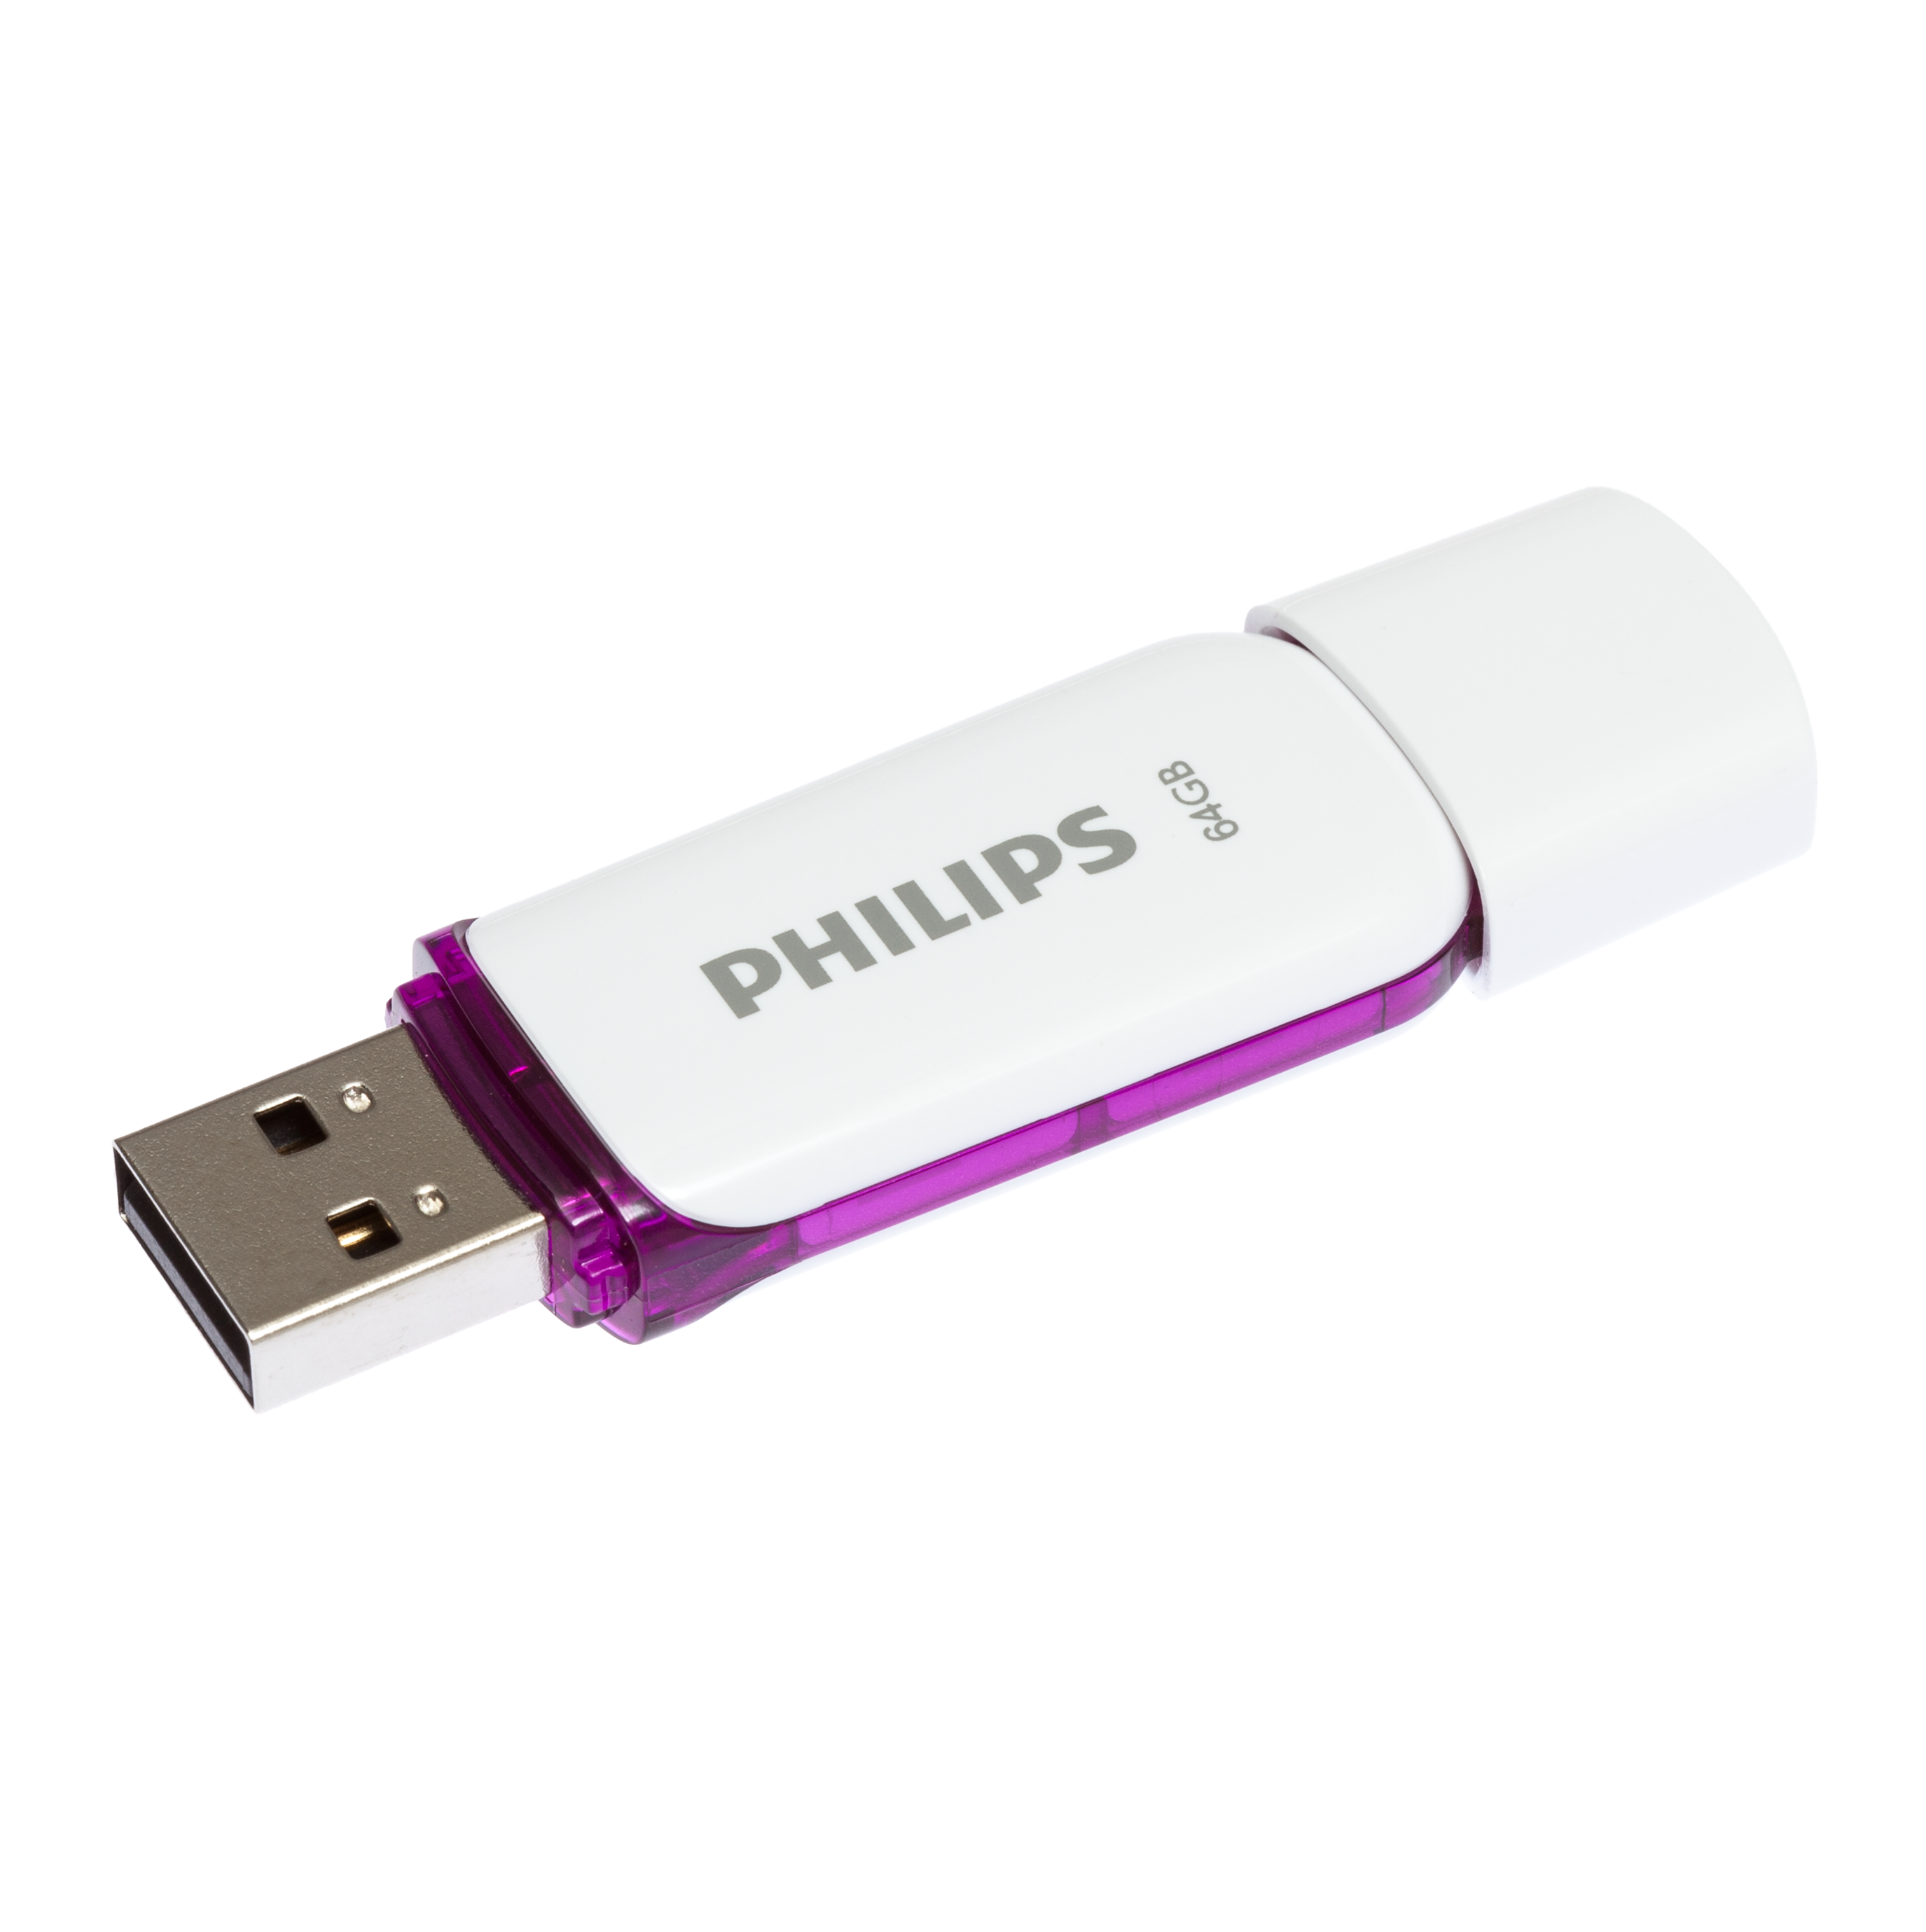 25 PHILIPS 64 Snow 64GB USB-Stick Purple®, Edition (Weiß, weiss Magic MB/s, GB)